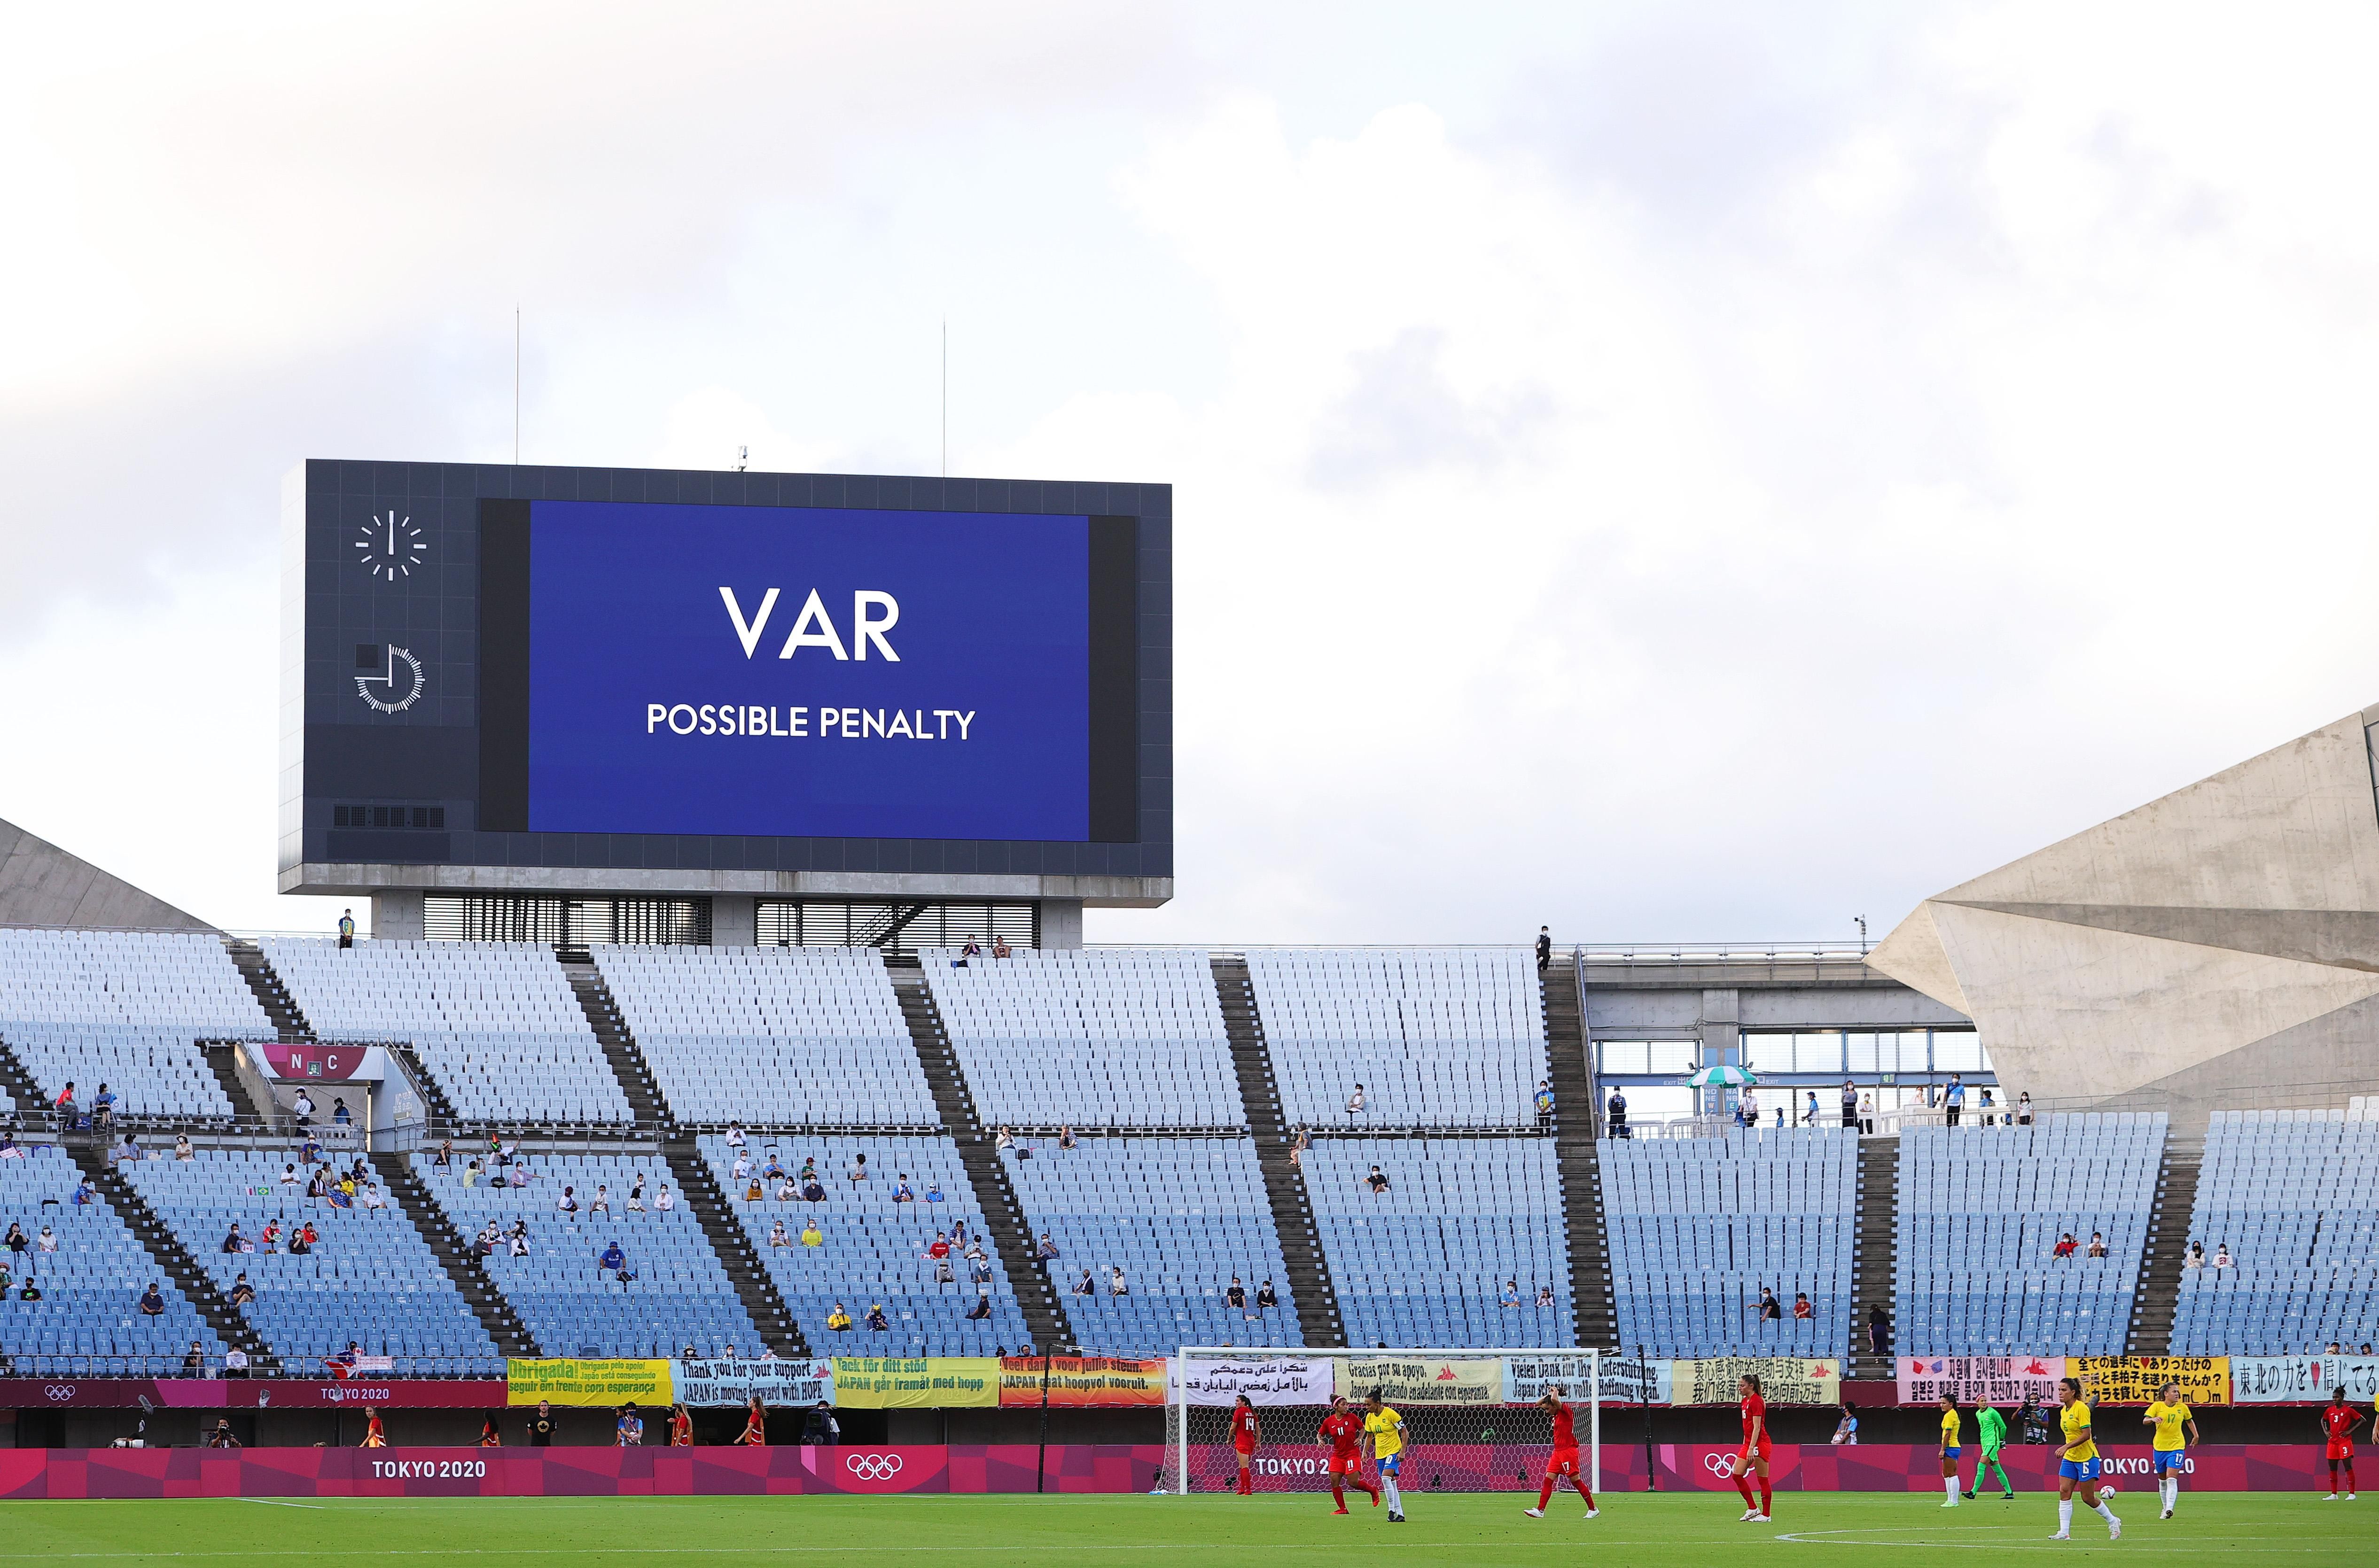 VAR використовуватимуть у відборі на ЧС-2022: наступний матч України пройде за участю технології - Збірна